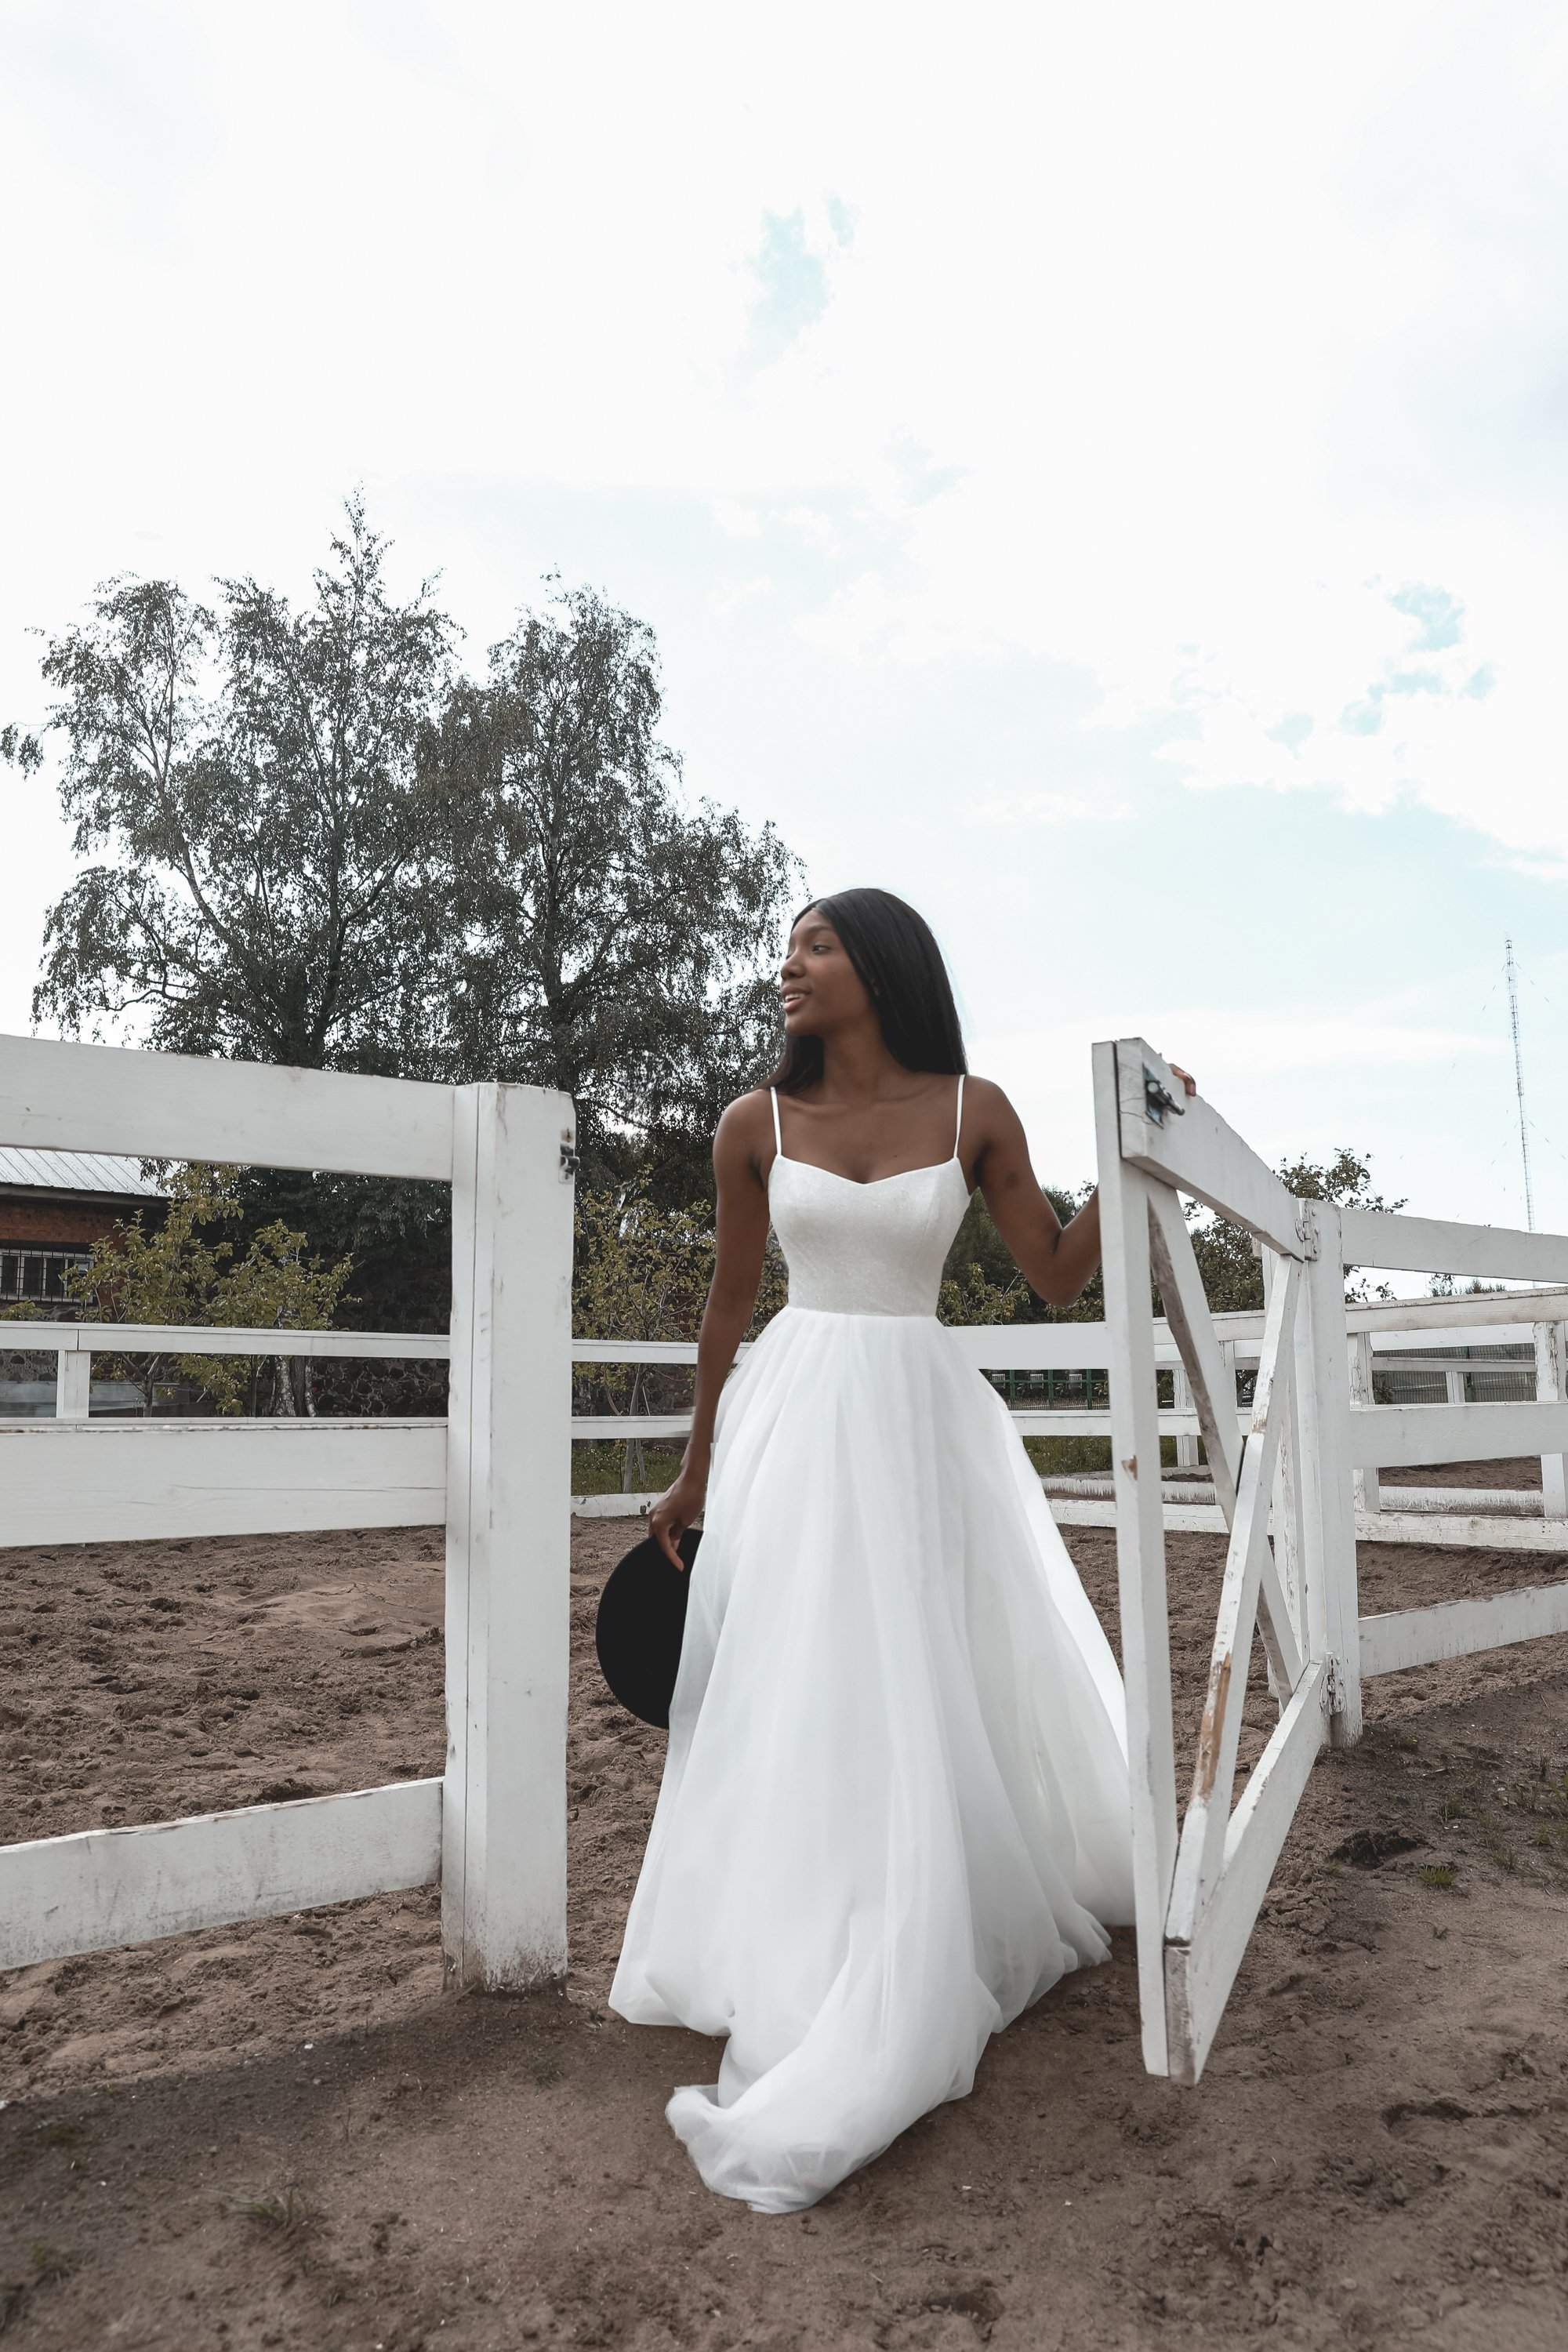 Wedding Dresses Under $2500  Online Bridal Shop – Olivia Bottega